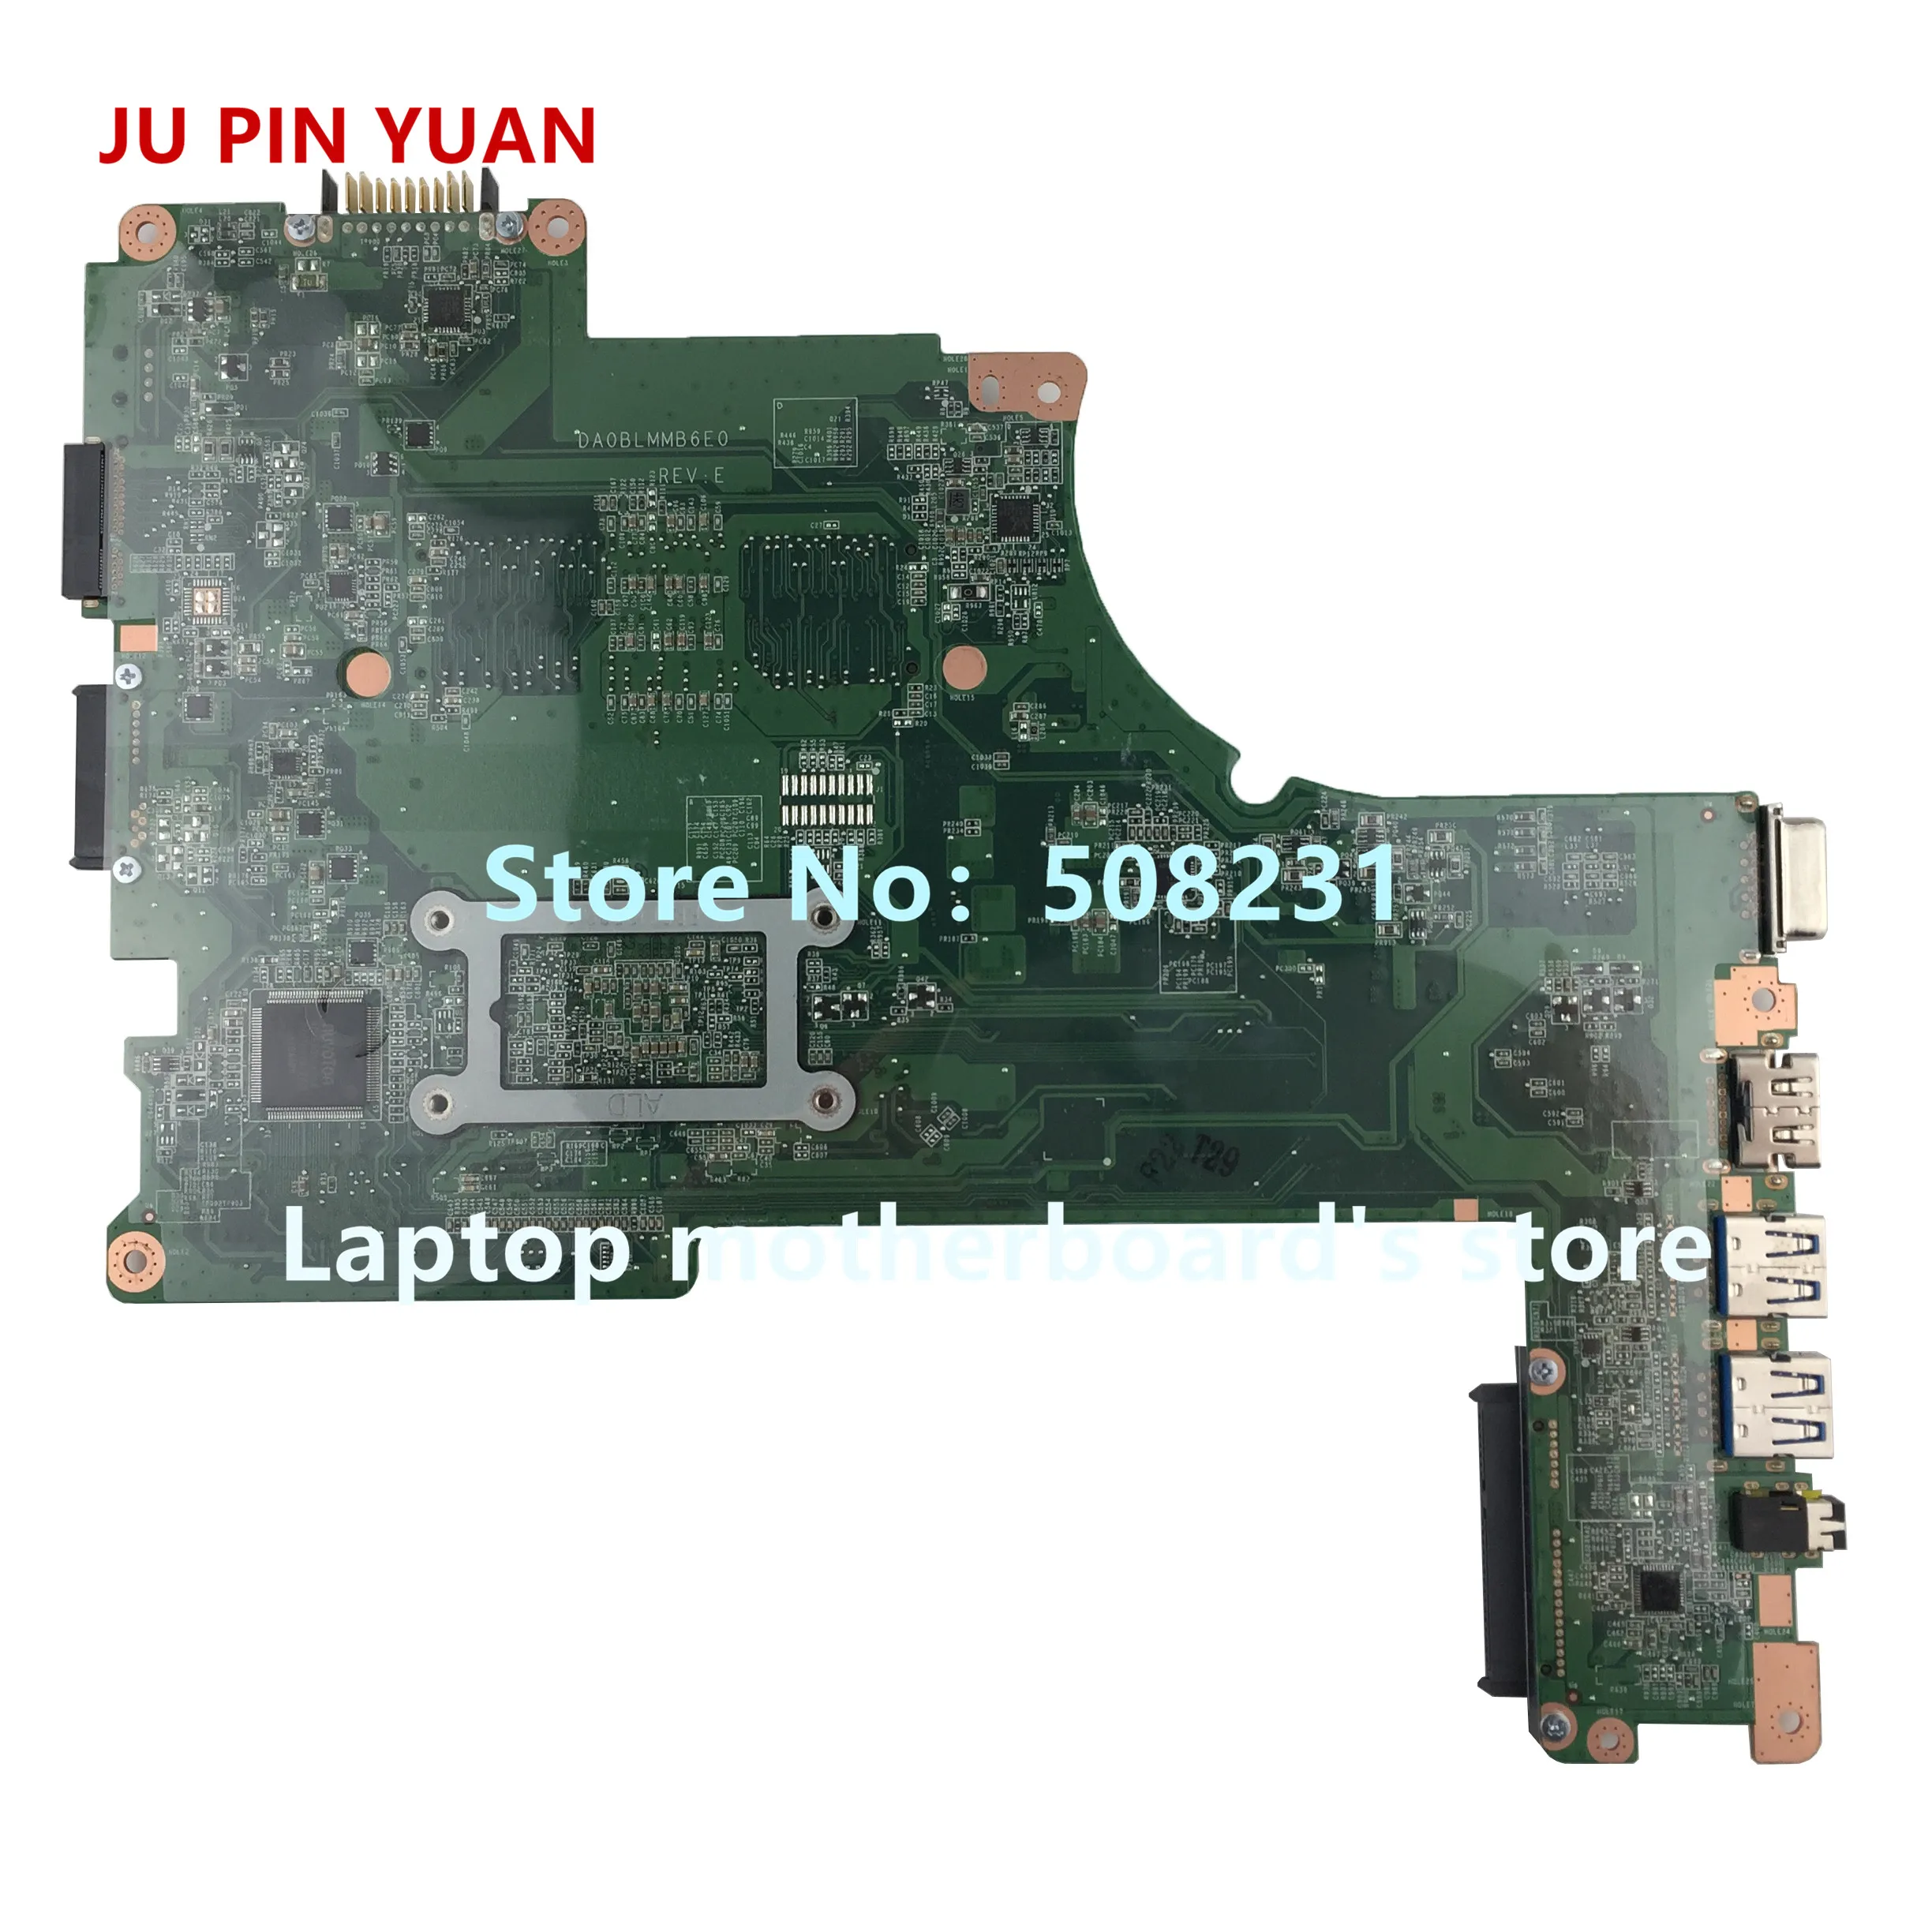 Ju pin yuan A000301100 DA0BLMMB6E0  Toshiba Satellite L50D L55D L50D-B L55D-B      A8-6410U